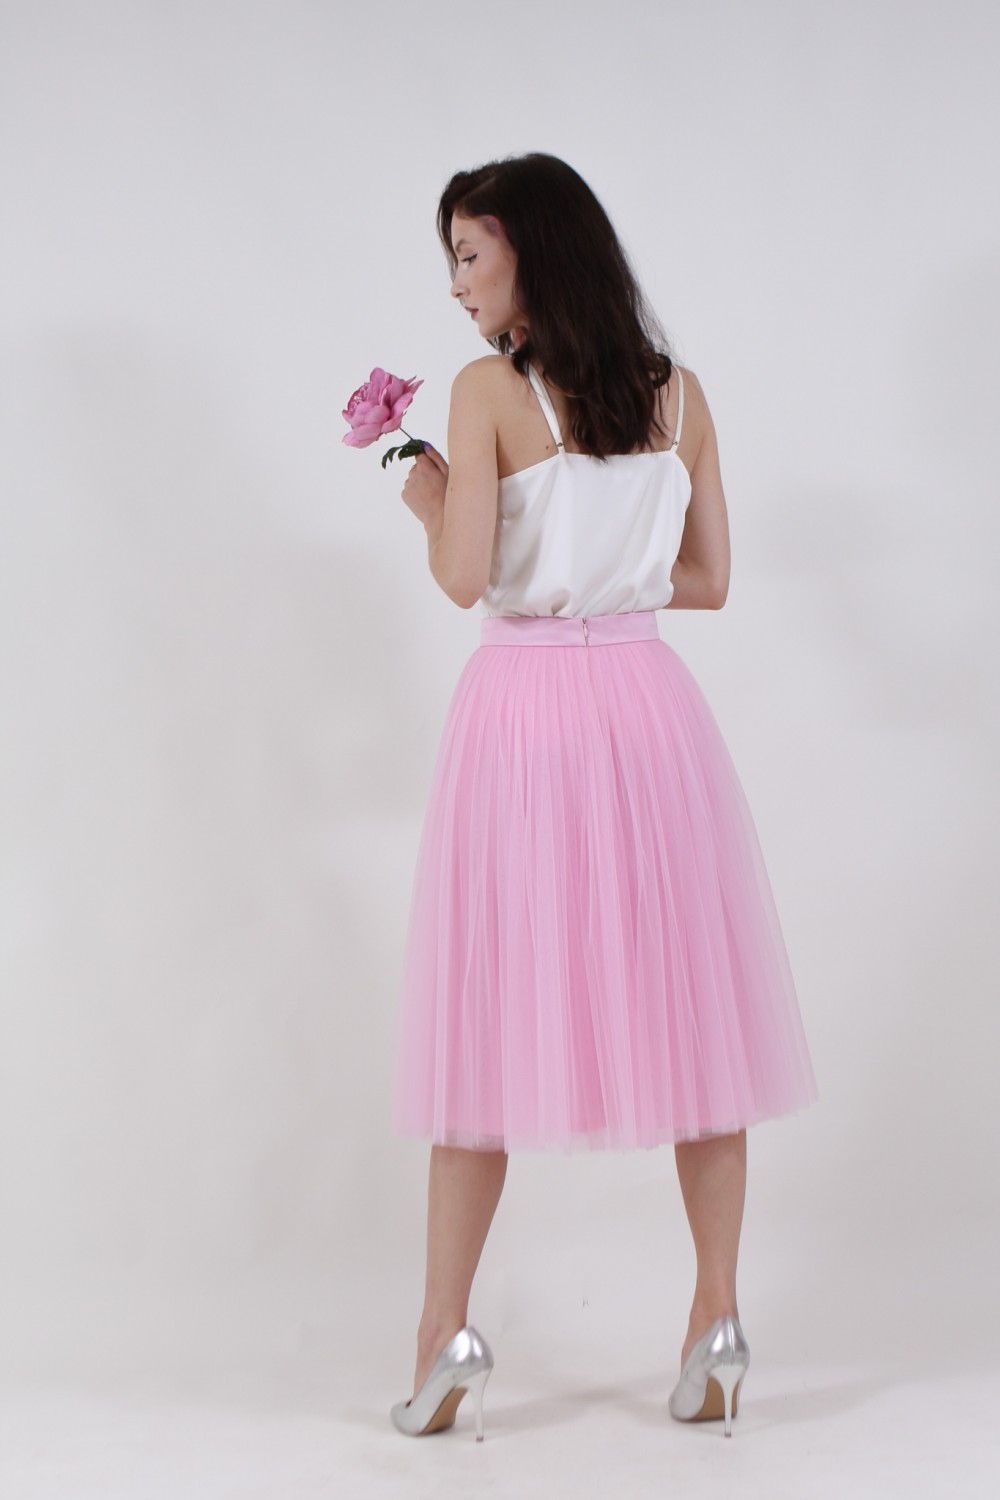 Пышная юбка из фатина (60 цветов)  розовая - фото